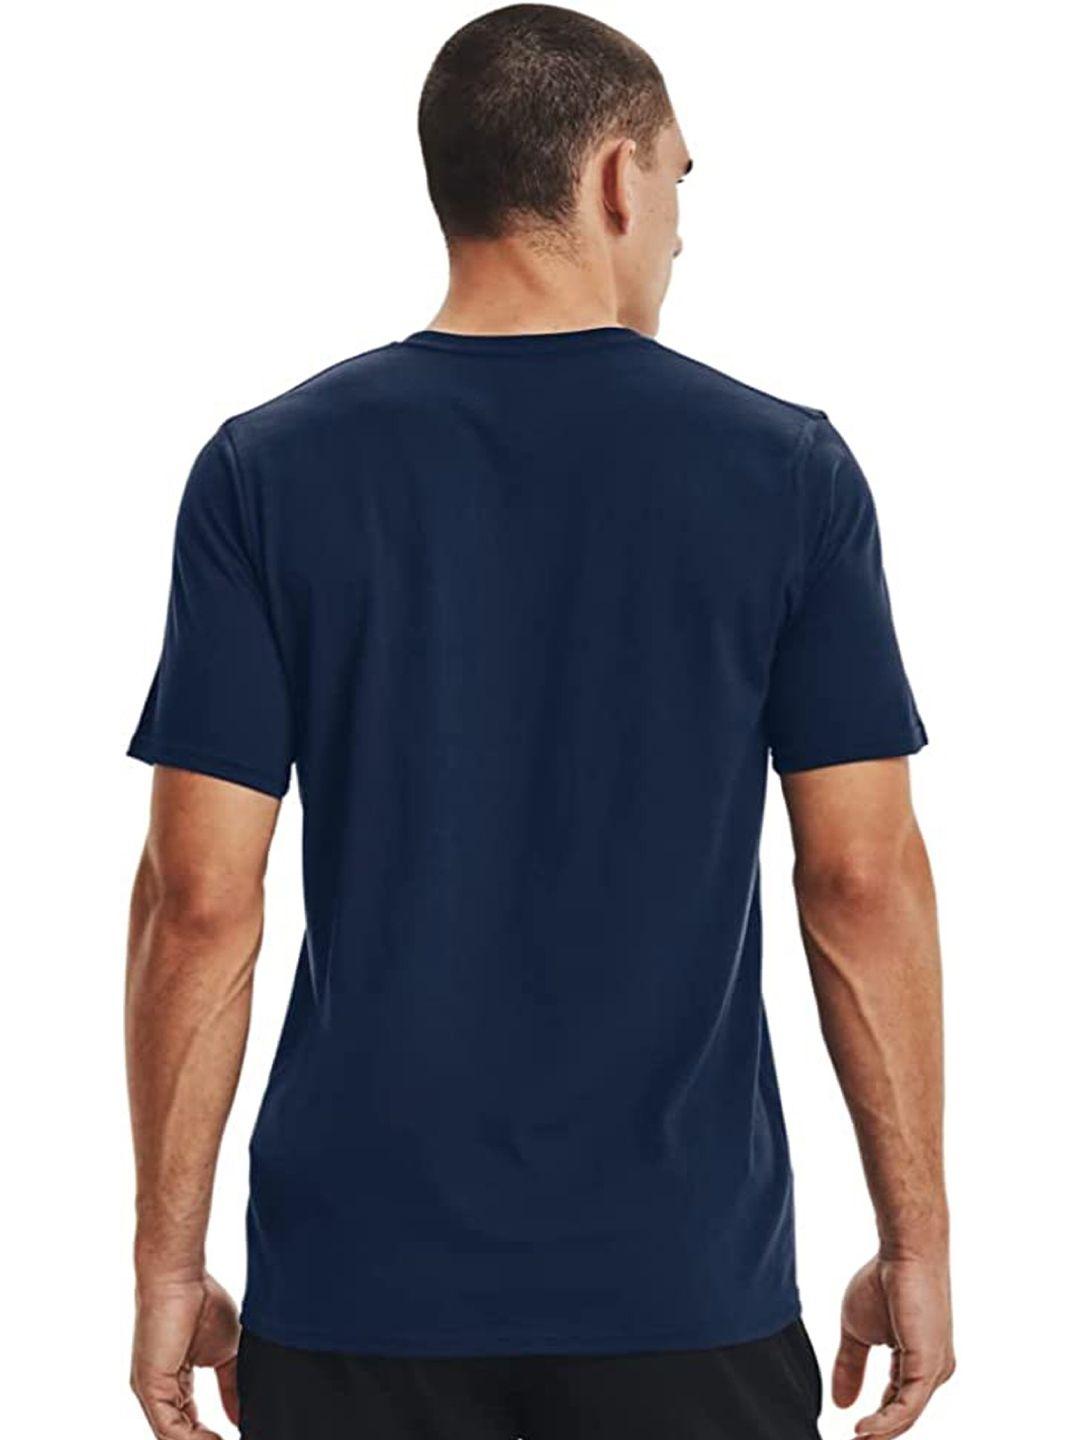 kaezri men navy blue high neck drop-shoulder sleeves t-shirt